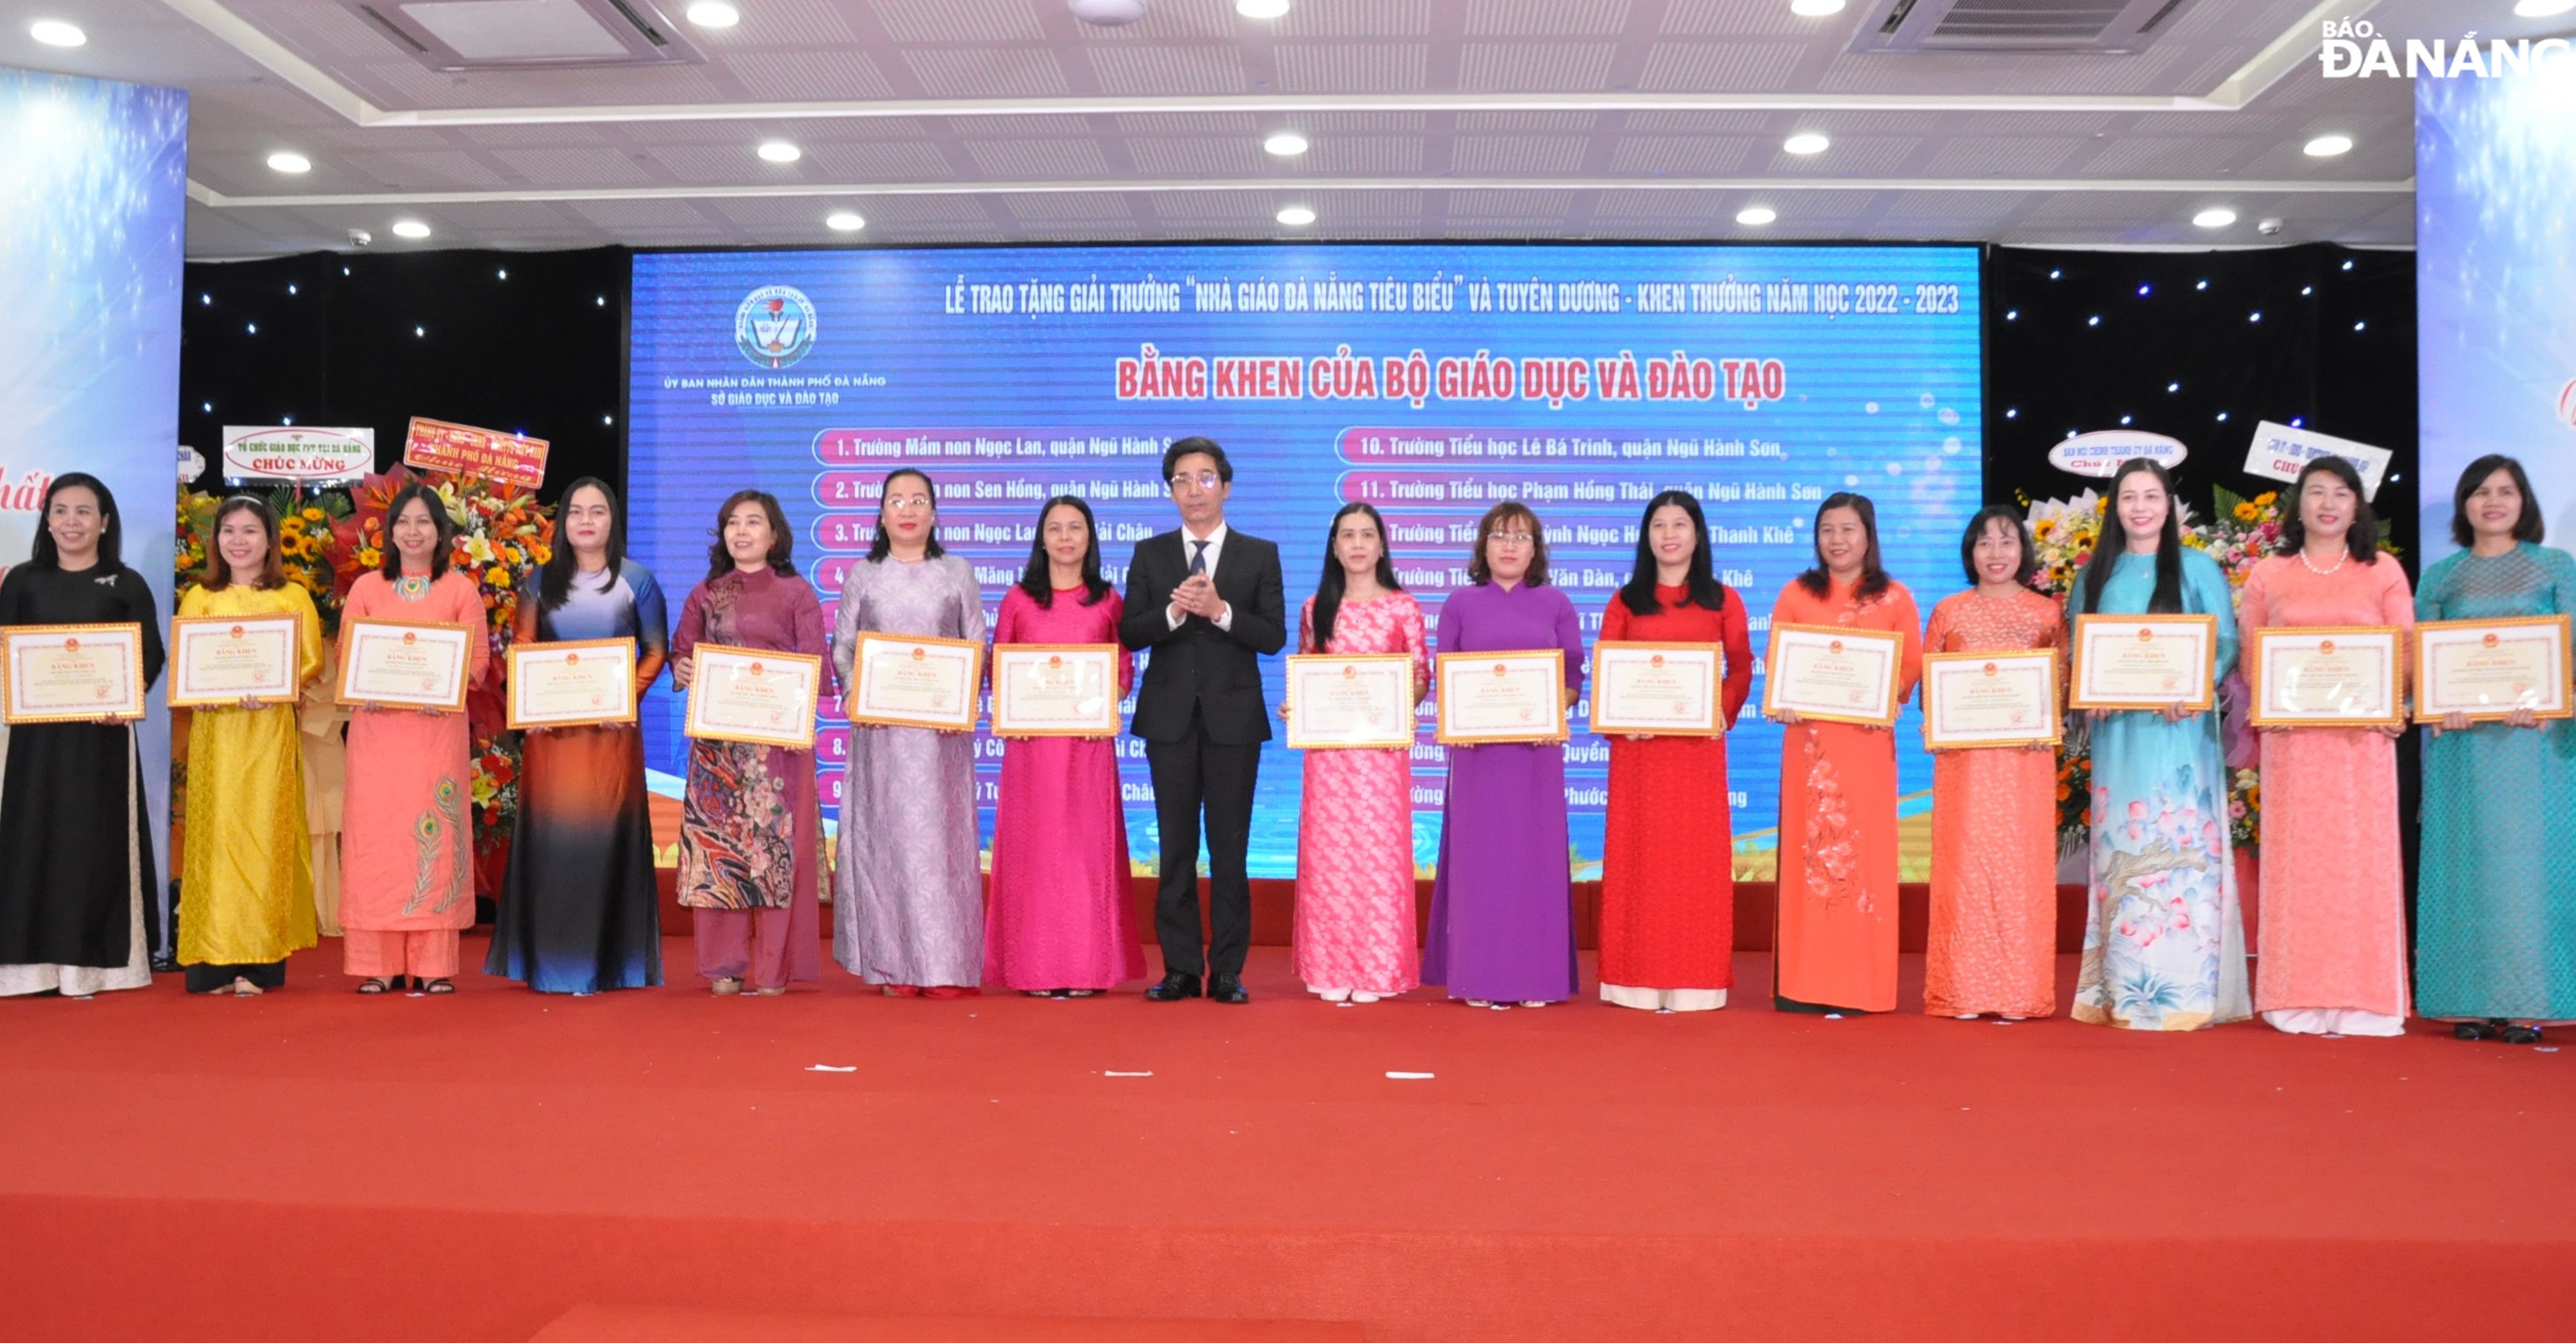 Phó Chủ tịch UBND thành phố Trần Chí Cường (thứ 8, bên trái sang) tặng bằng khen của Bộ GD&ĐT cho các tập thể. Ảnh: LÊ HÙNG